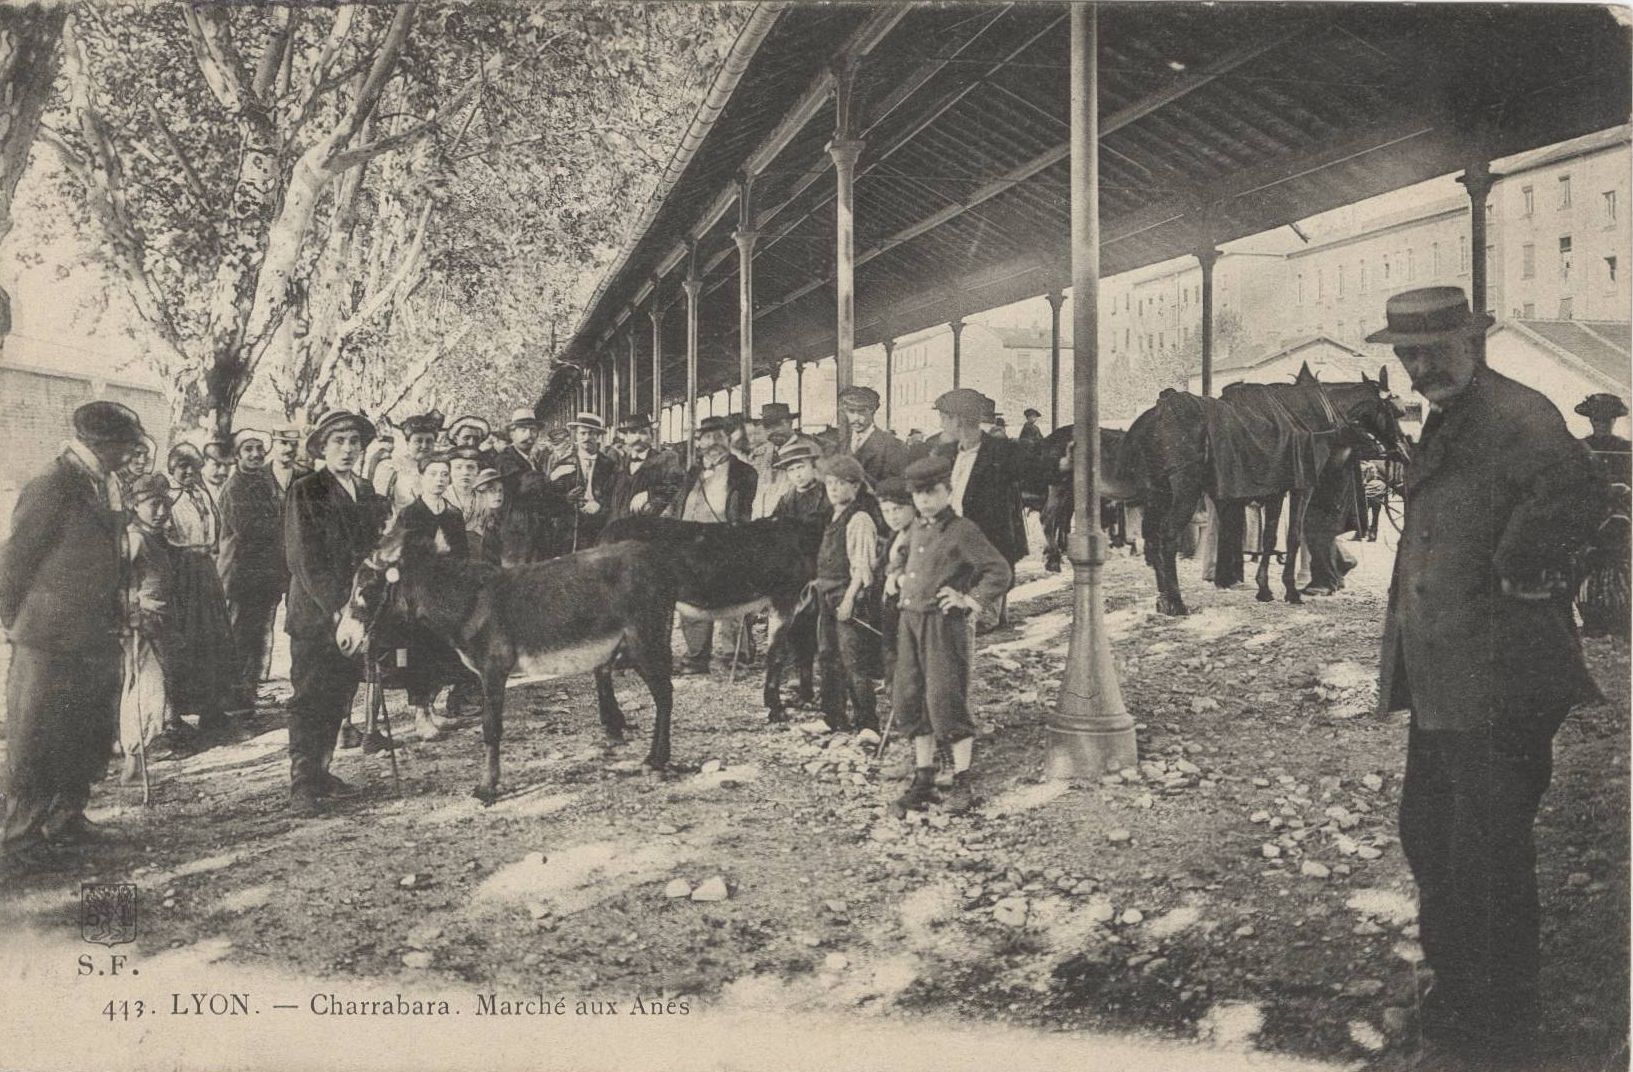 Lyon - Charrabara, Marché aux ânes : carte postale NB (vers 1906, cote : 4FI/4100)